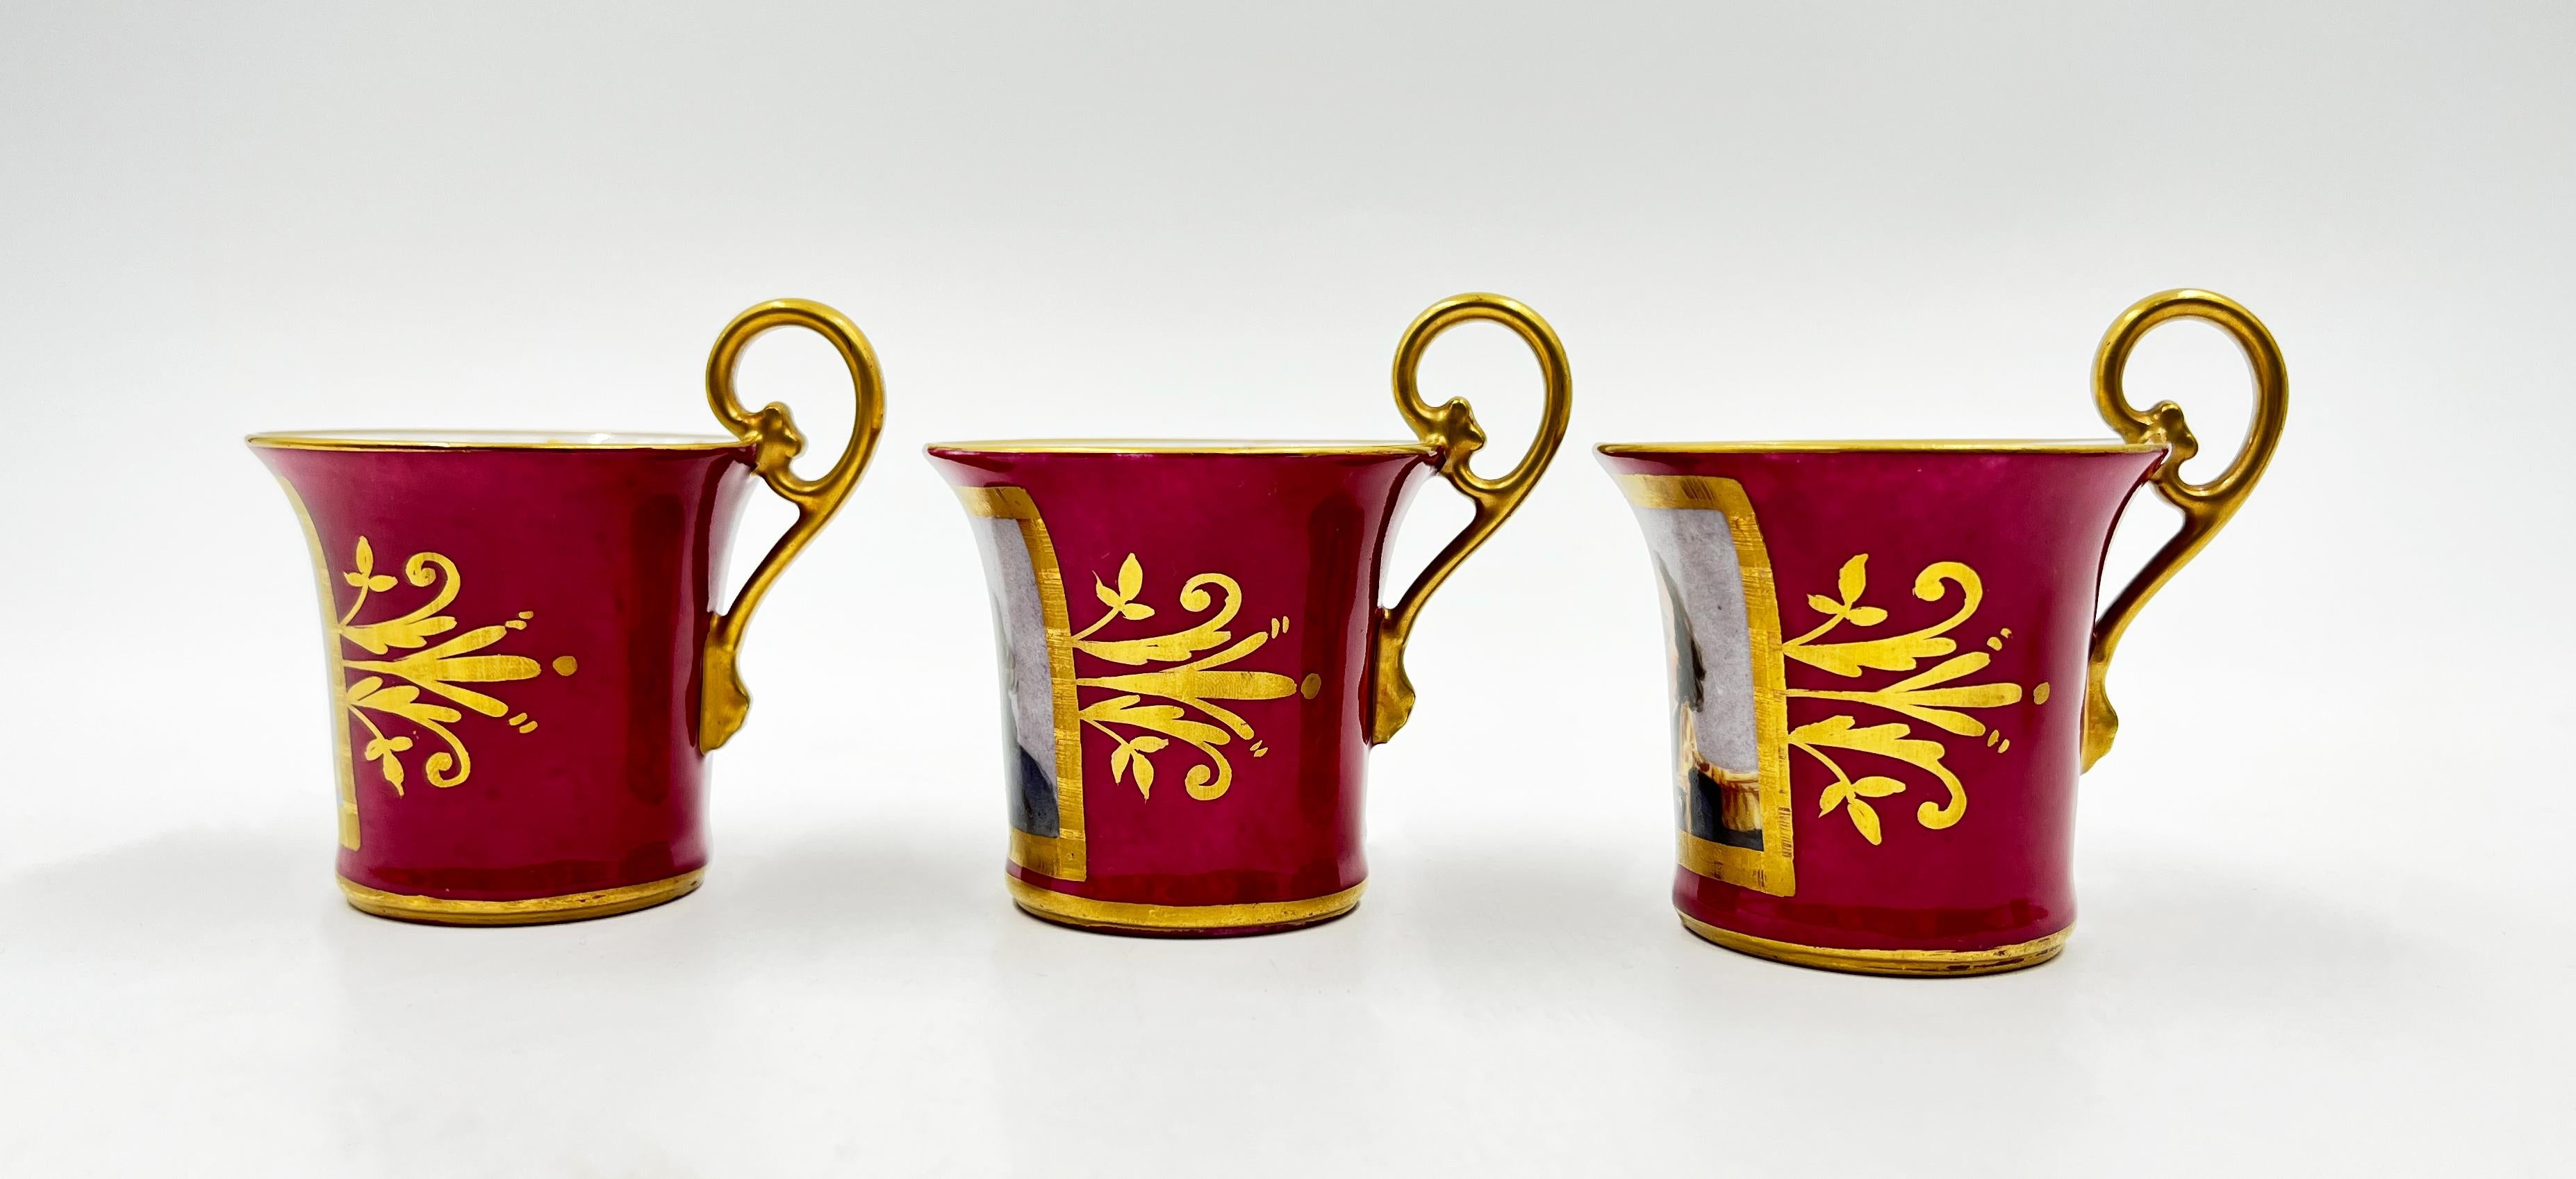 19th Century Paris Porcelain Tea Set Featuring Napoleonic Portraits For Sale 6